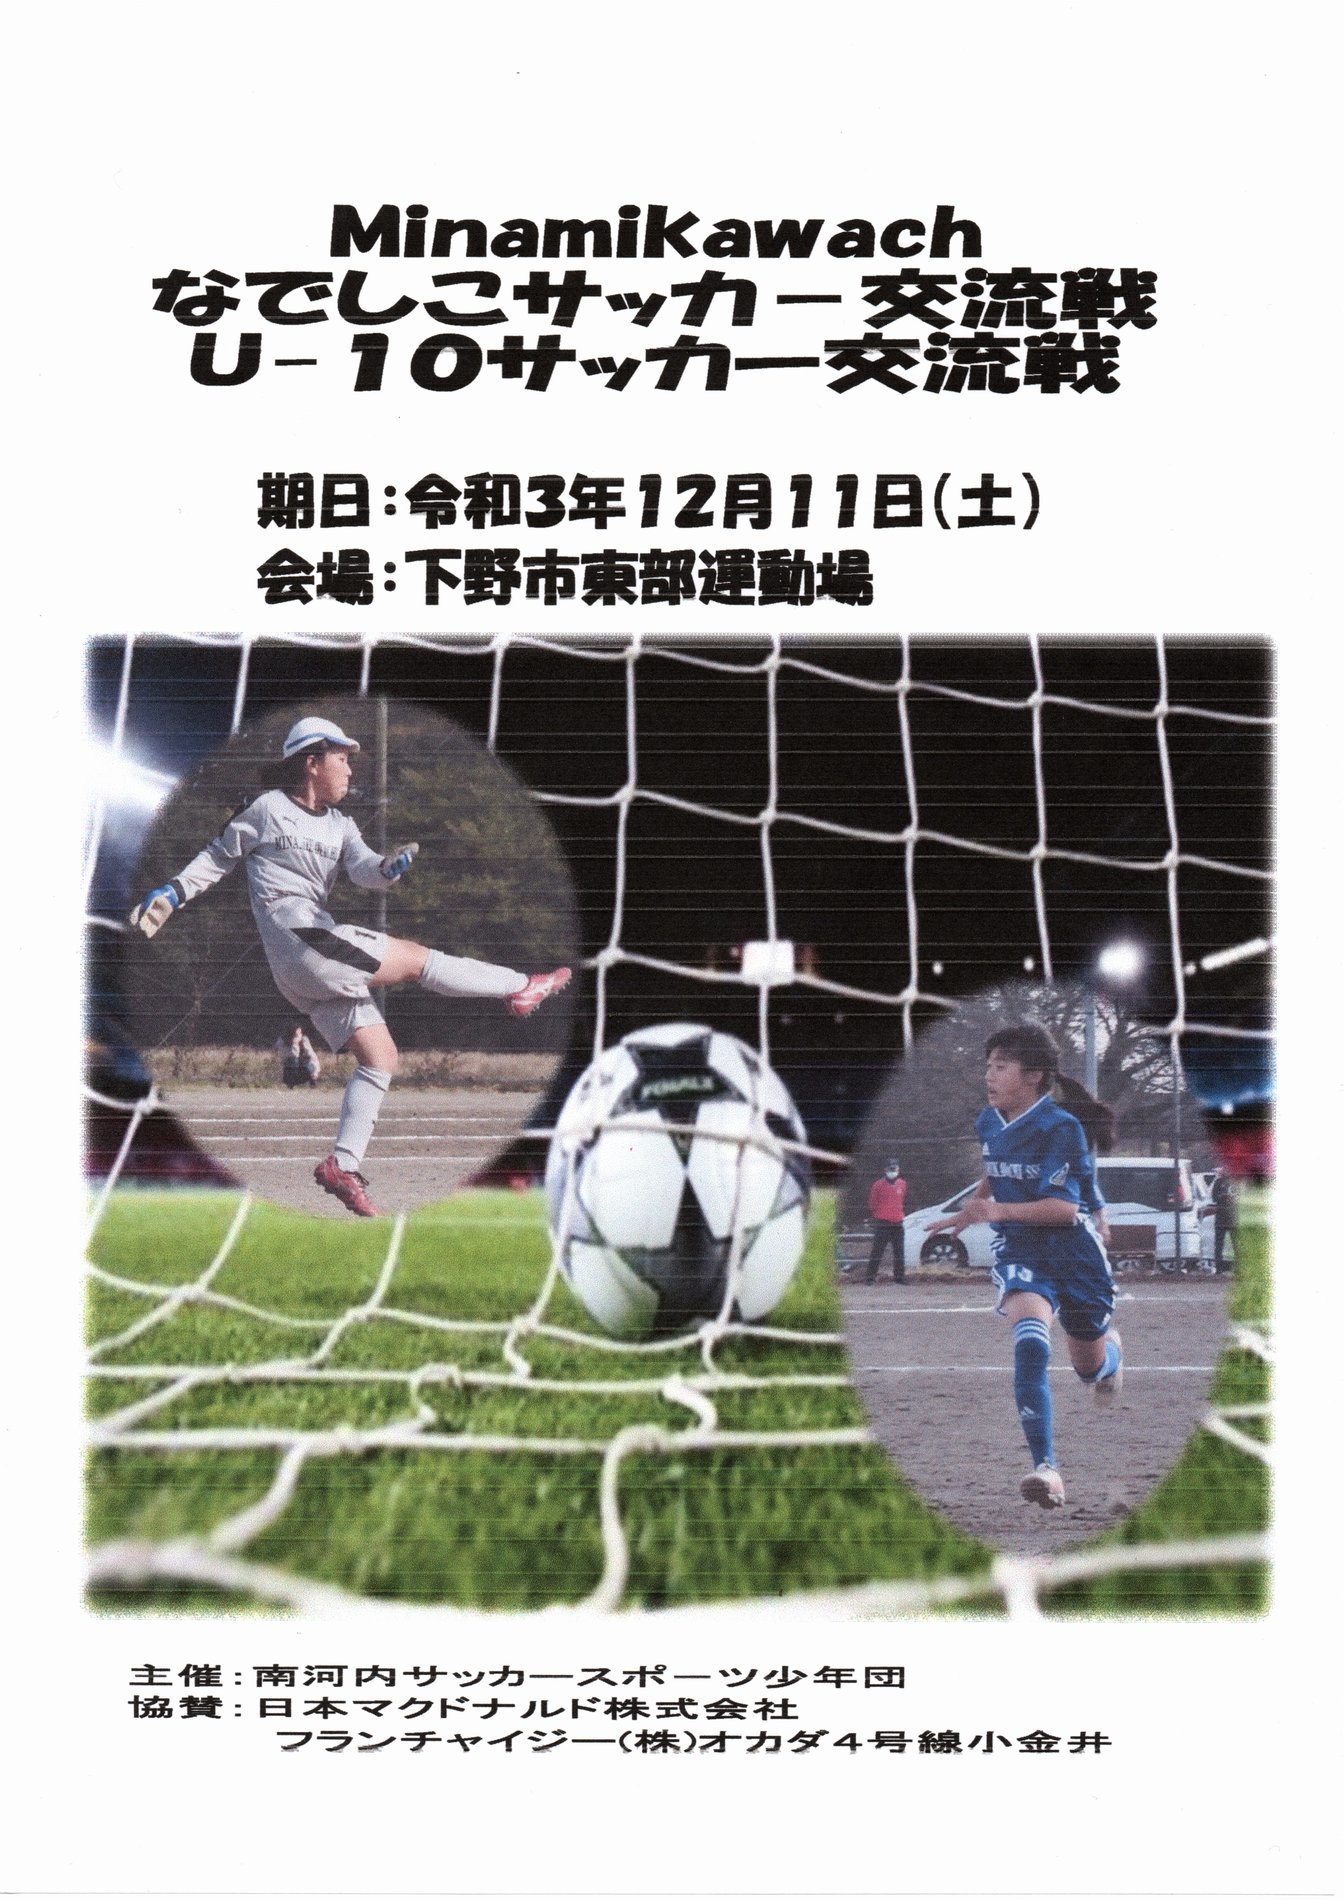 Minamikawachなでしこサッカー交流戦のハイライト21 12 11 Minamikawachisss Tochigi Shimotsuke City２